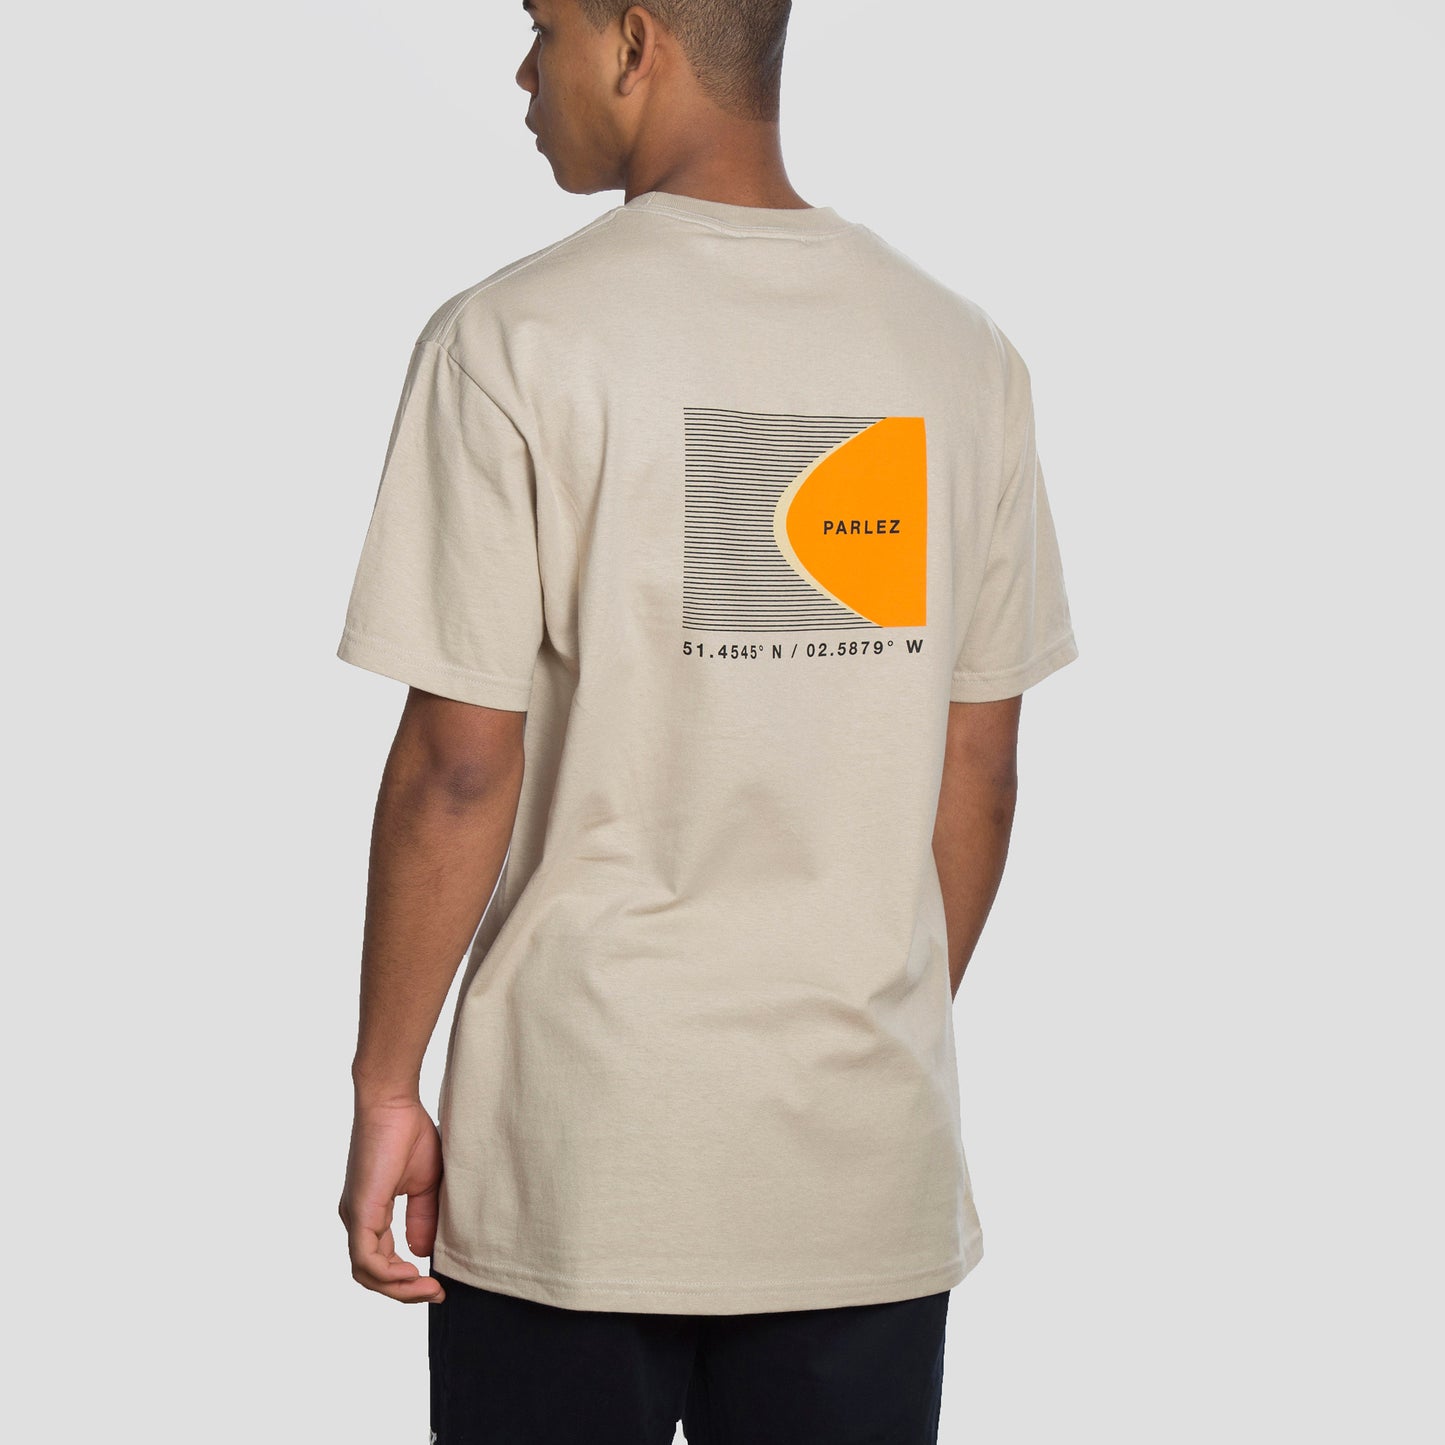 Parlez Camiseta Coastal - PARHW20861-CAMEL - Colección Chico